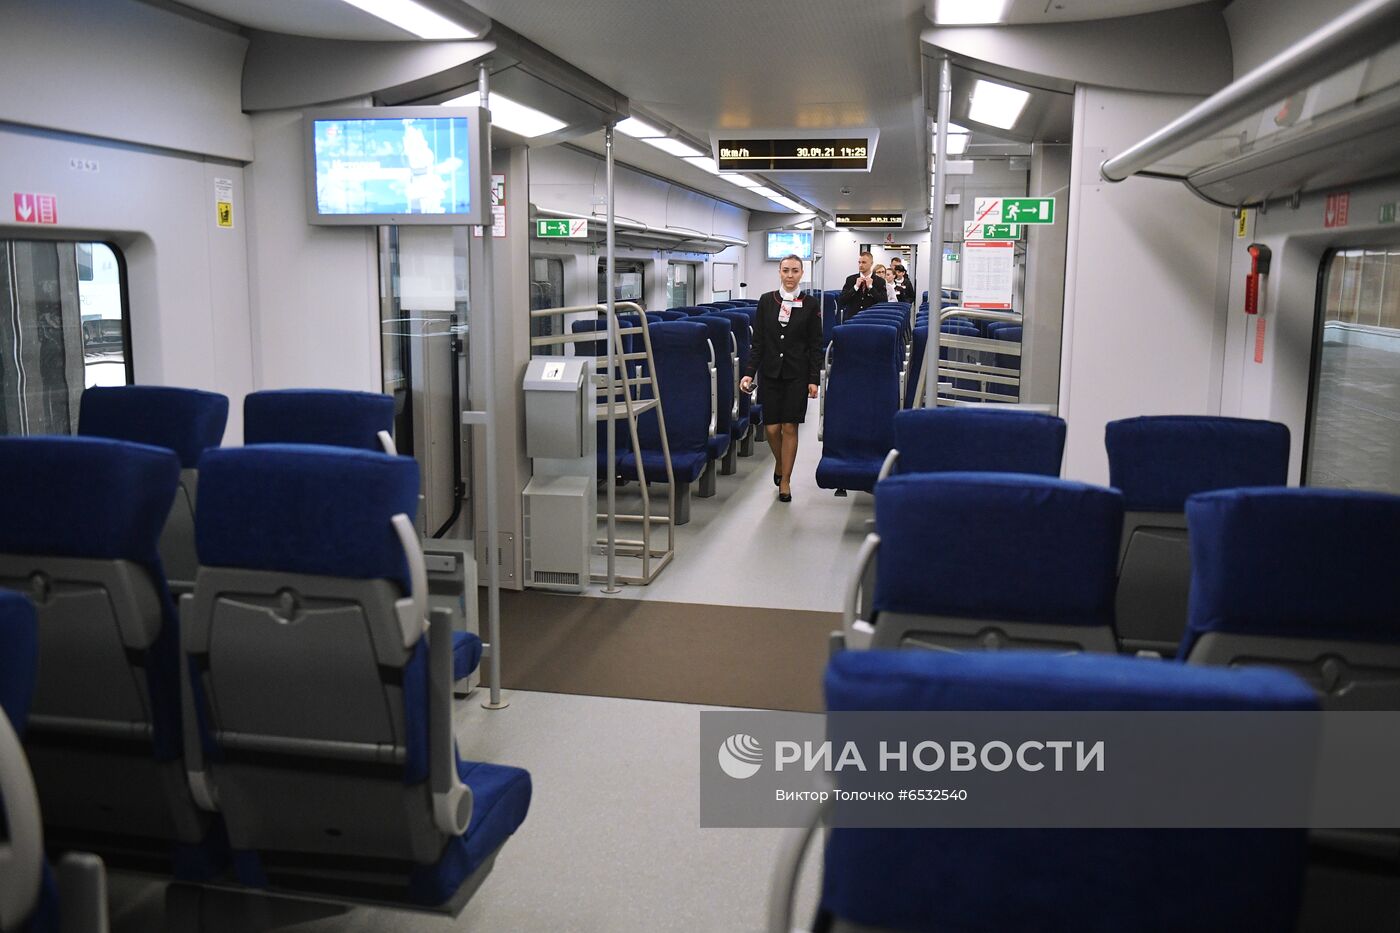 Отправление скоростного поезда "Ласточка" из Минска в Москву